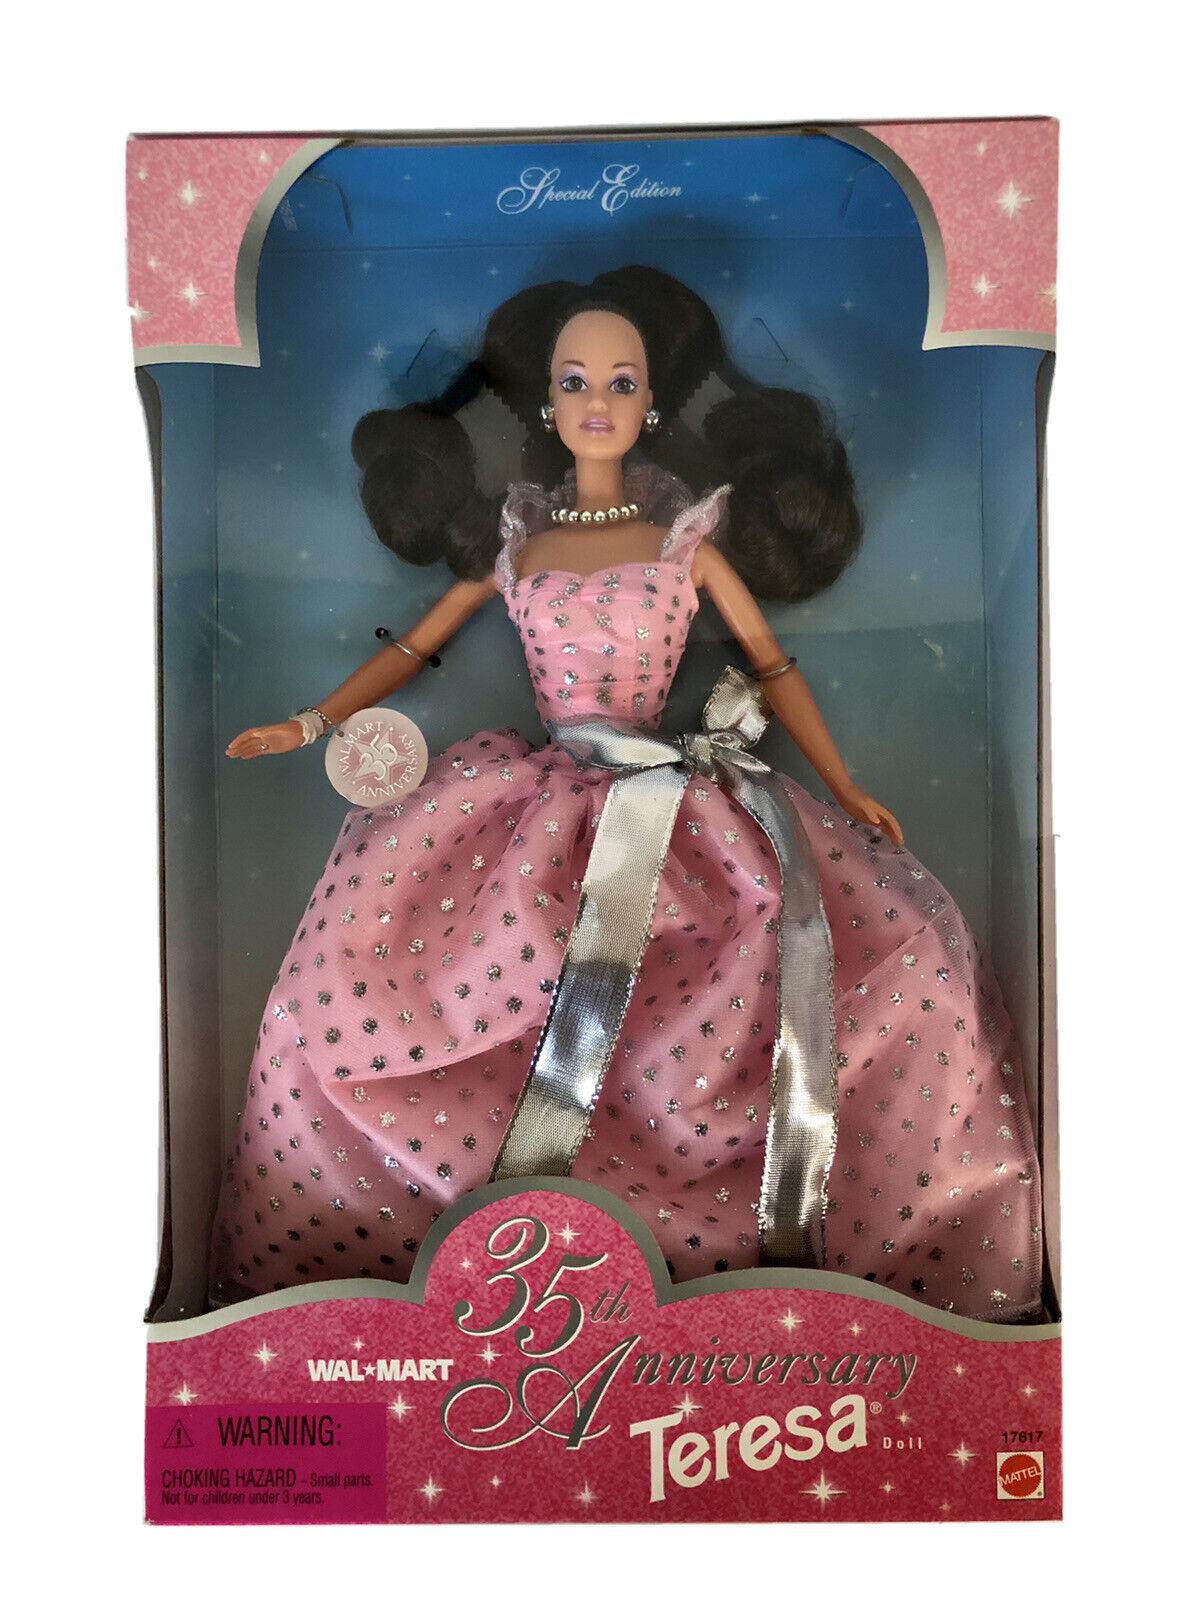 Walmart 35th Anniversary Teresa Doll | Barbie Wiki | Fandom